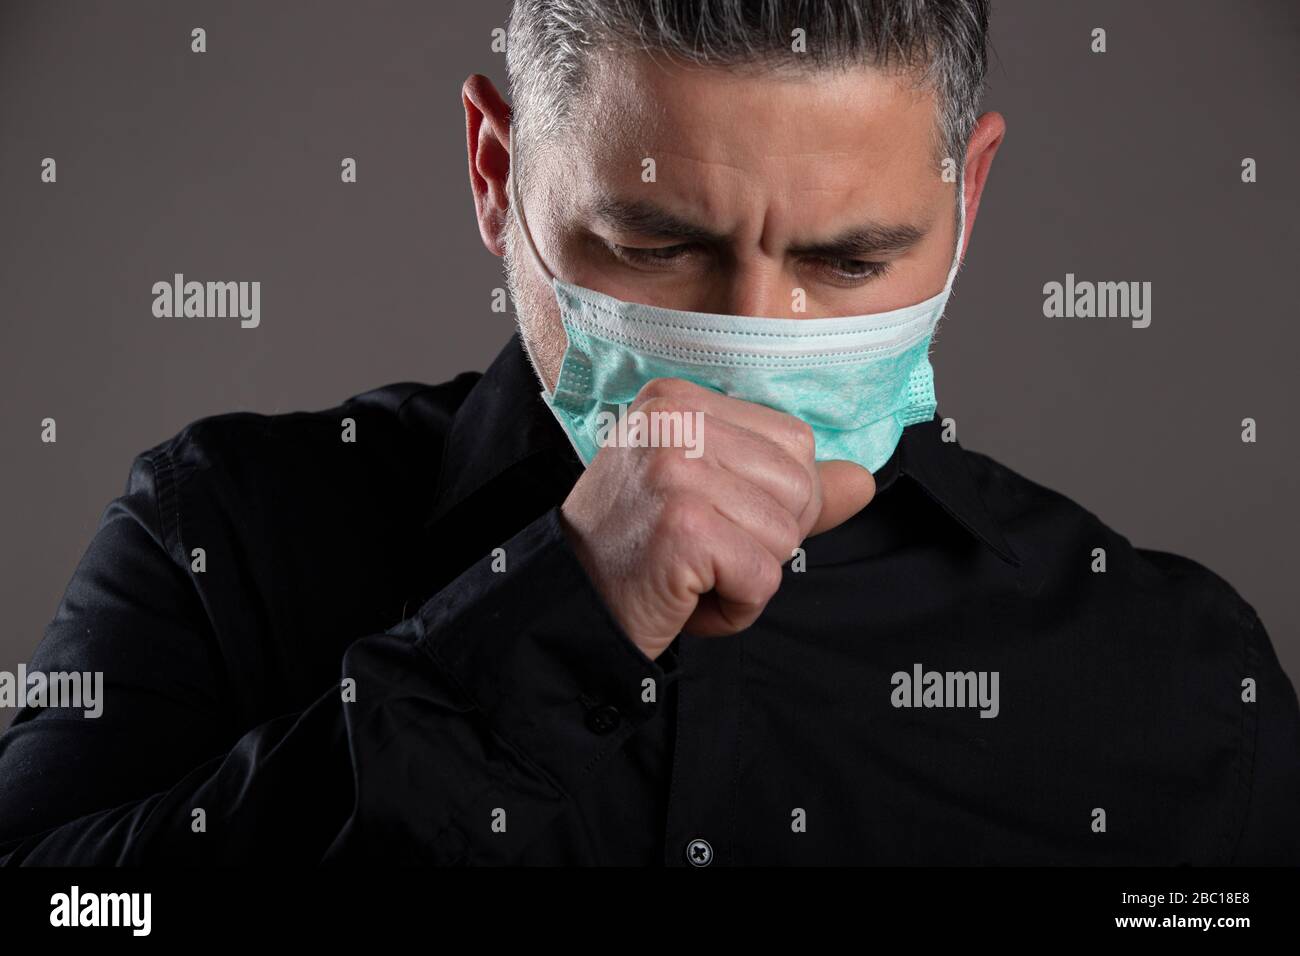 Ritratto chiuso dell'uomo con maschera chirurgica che tossisce in studio su sfondo grigio, concetto sanitario. Foto Stock